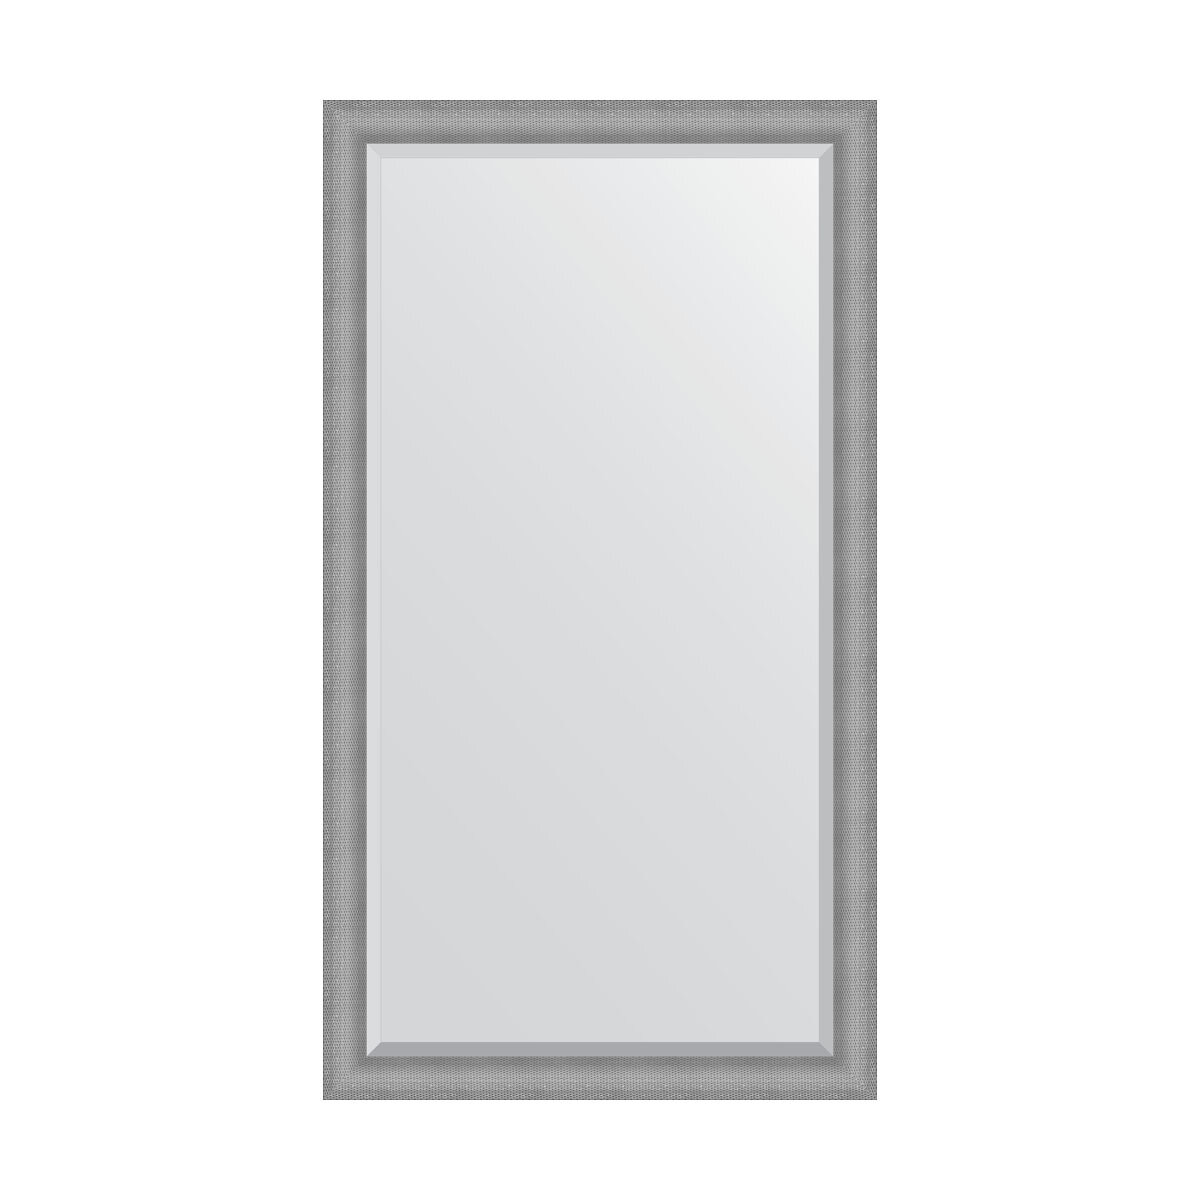 Зеркало напольное с фацетом EVOFORM в багетной раме серебряная кольчуга, 112х202 см, для гостиной, прихожей, спальни и ванной комнаты, BY 6188 - фото №1